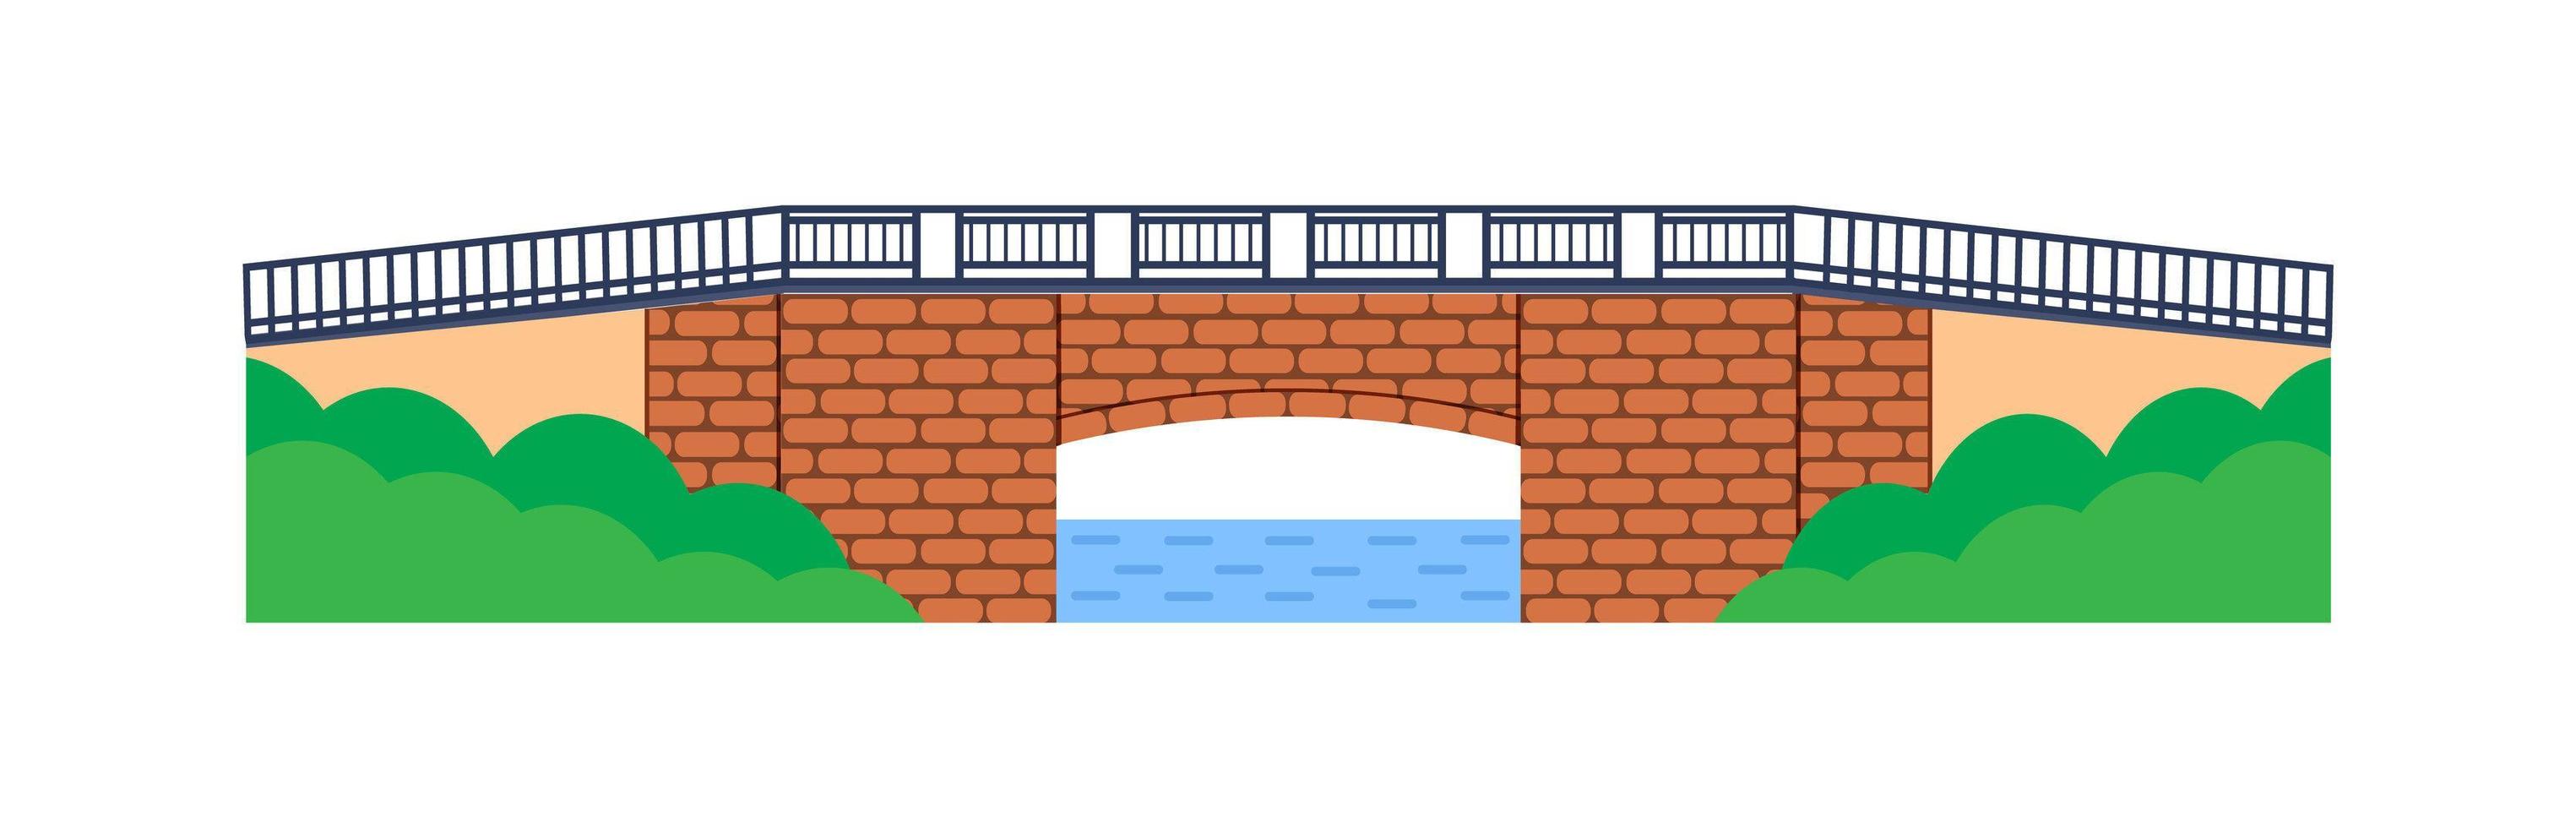 stenen brug vector. stadsarchitectuurelement en brugconstructie over de rivier met geïsoleerde rijbaan en lantaarns op kleurrijk landschap vector